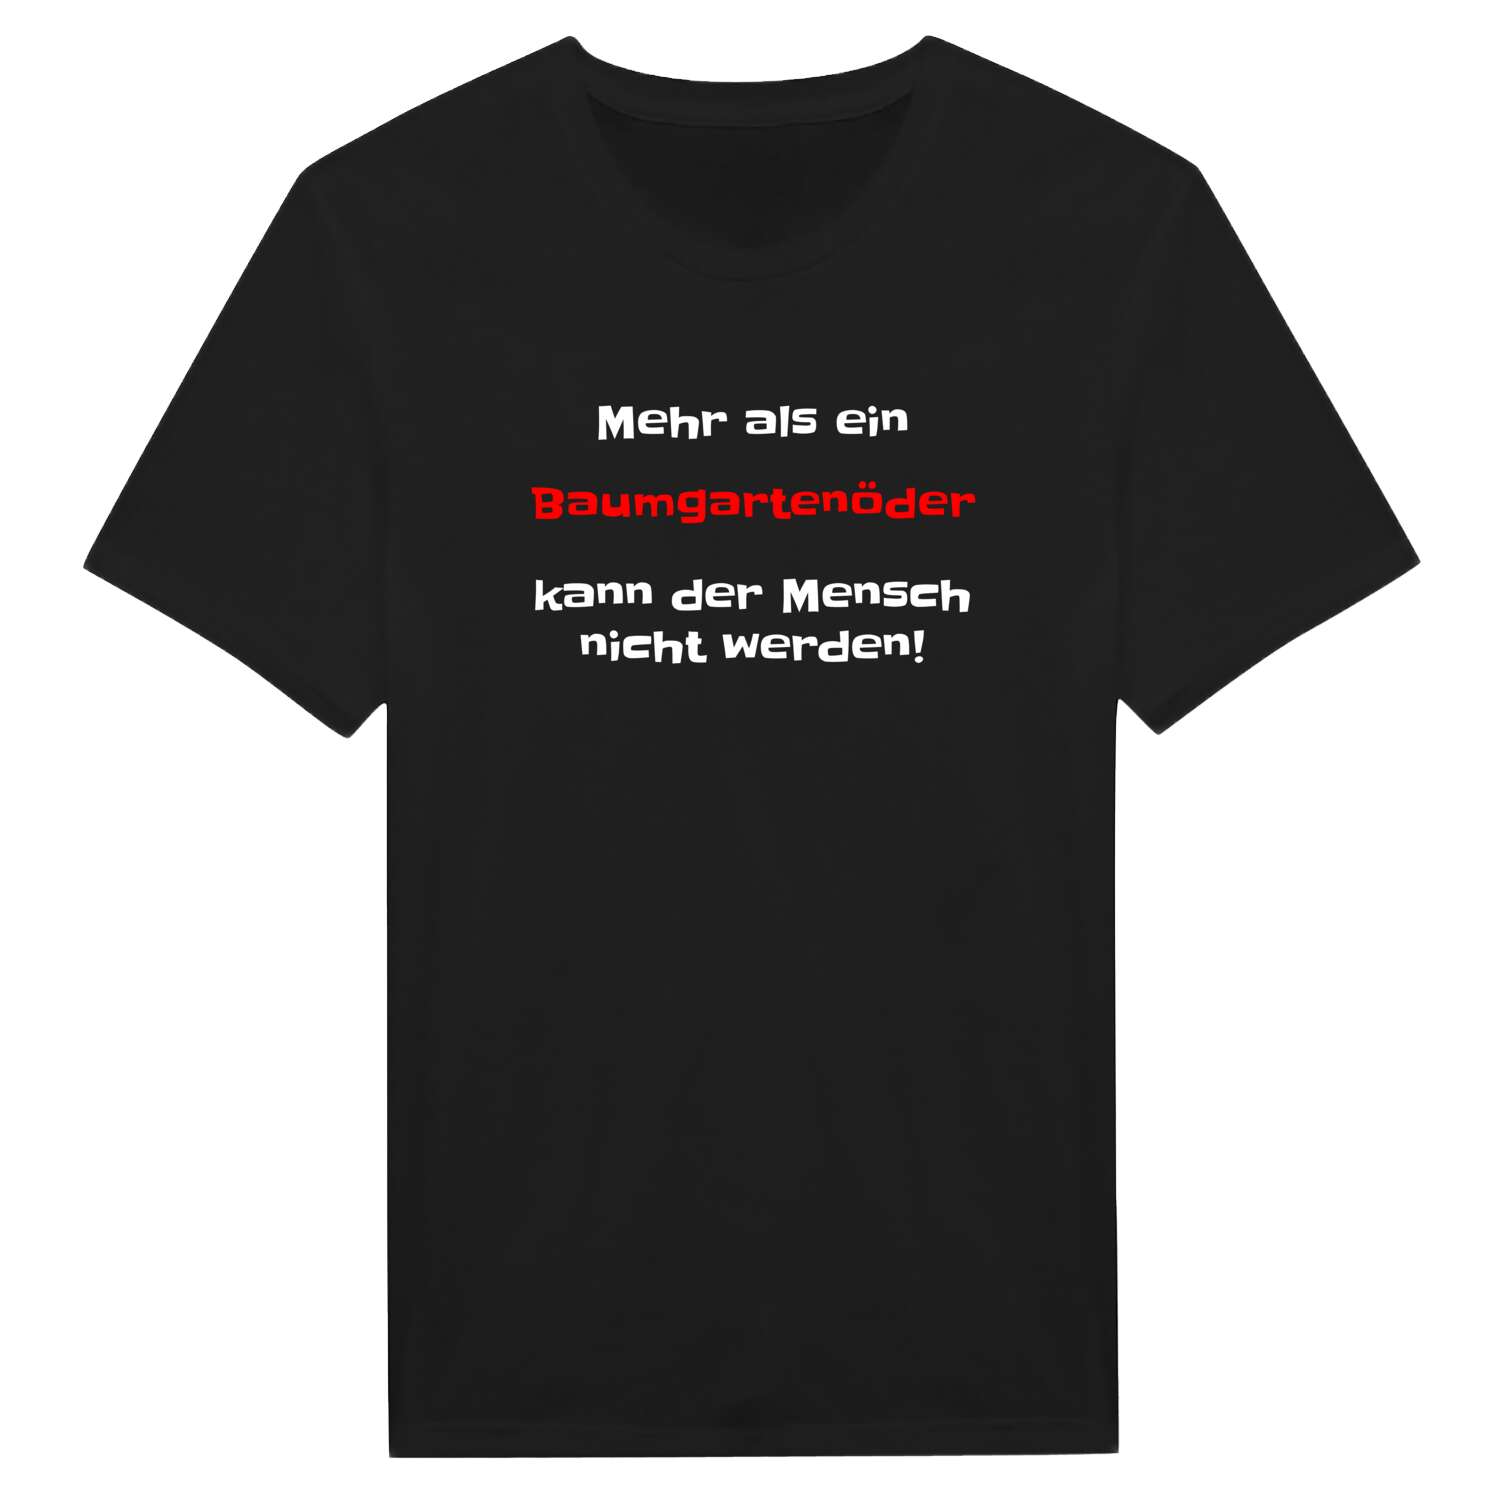 Baumgartenöd T-Shirt »Mehr als ein«